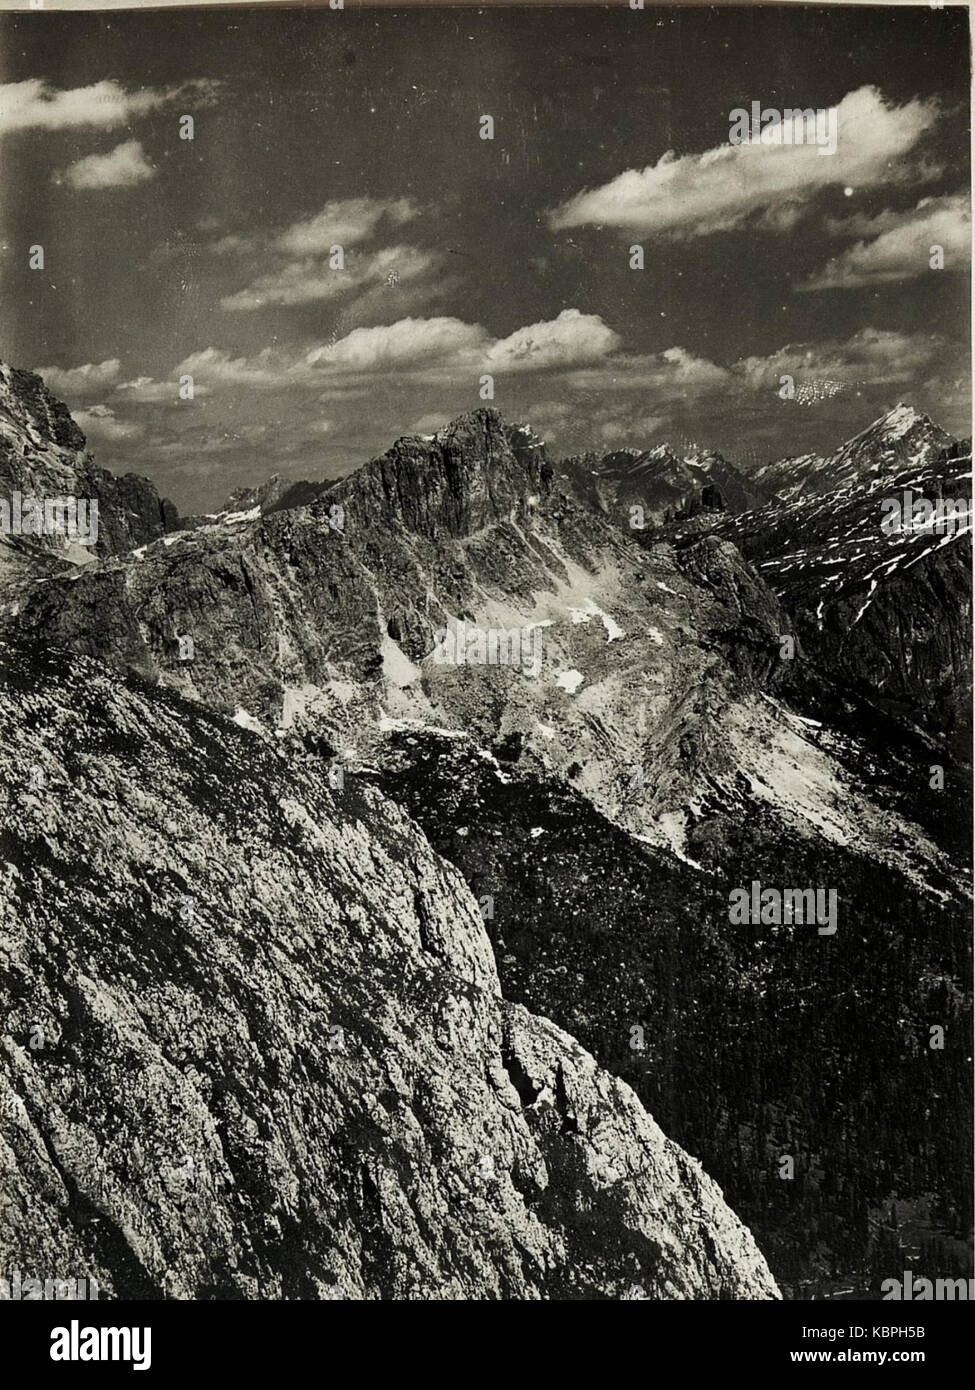 Panorama Standpunkt Settsass,.il Sasso di Stria. (5. Teilbild zu WK1 ALB15 04114A) (BildID 15421214) Foto Stock